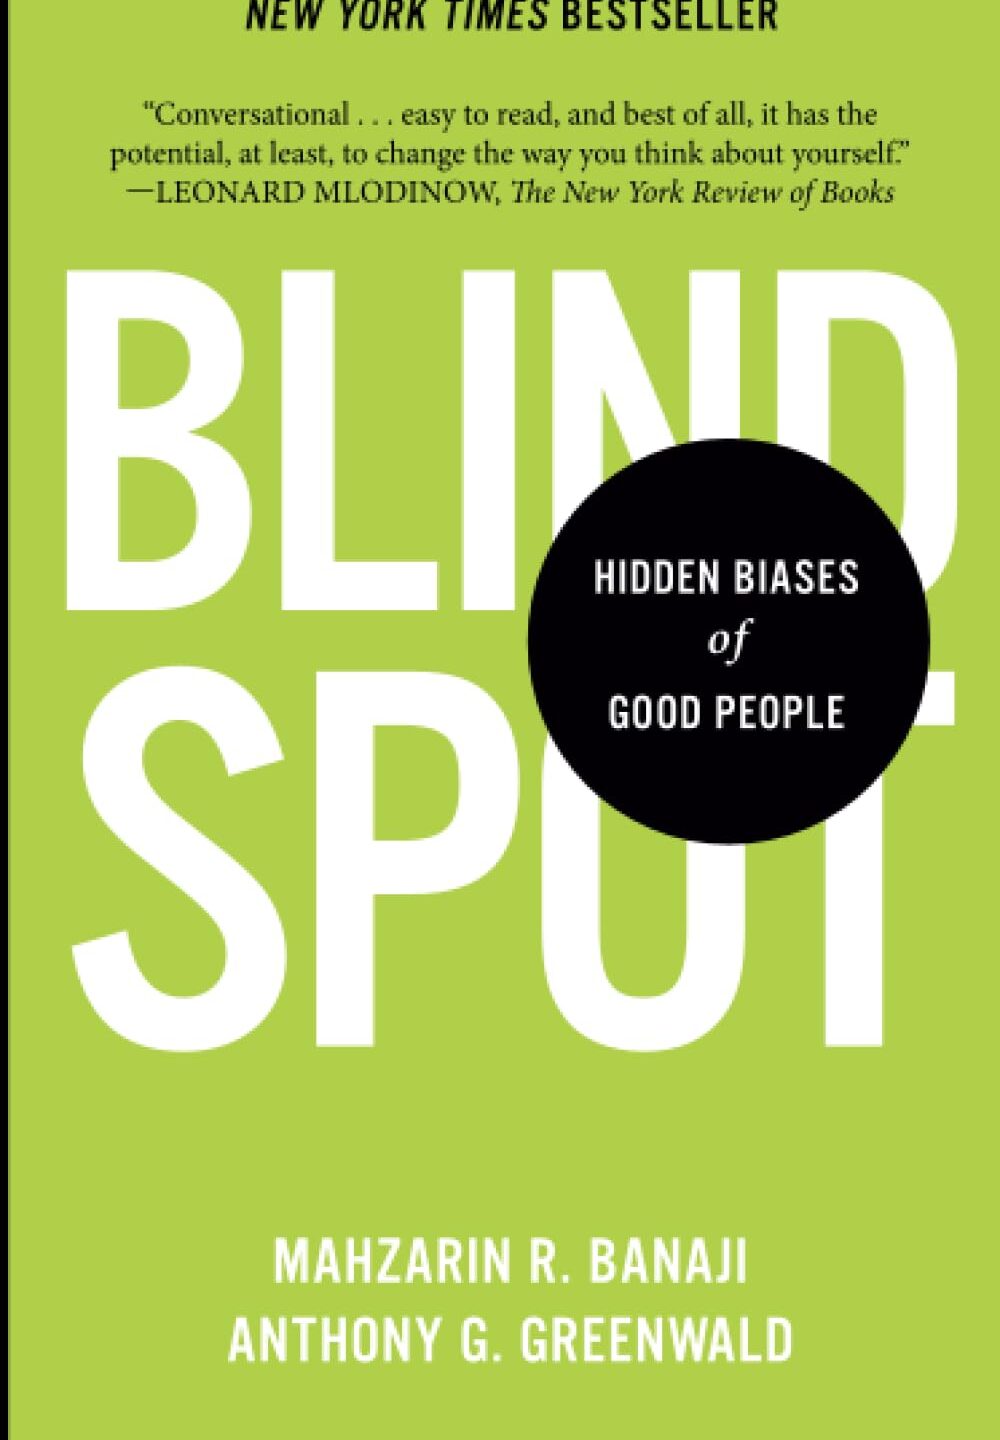 “Blindspot” by Mahzarin R Banaji and Anthony G Greenwald